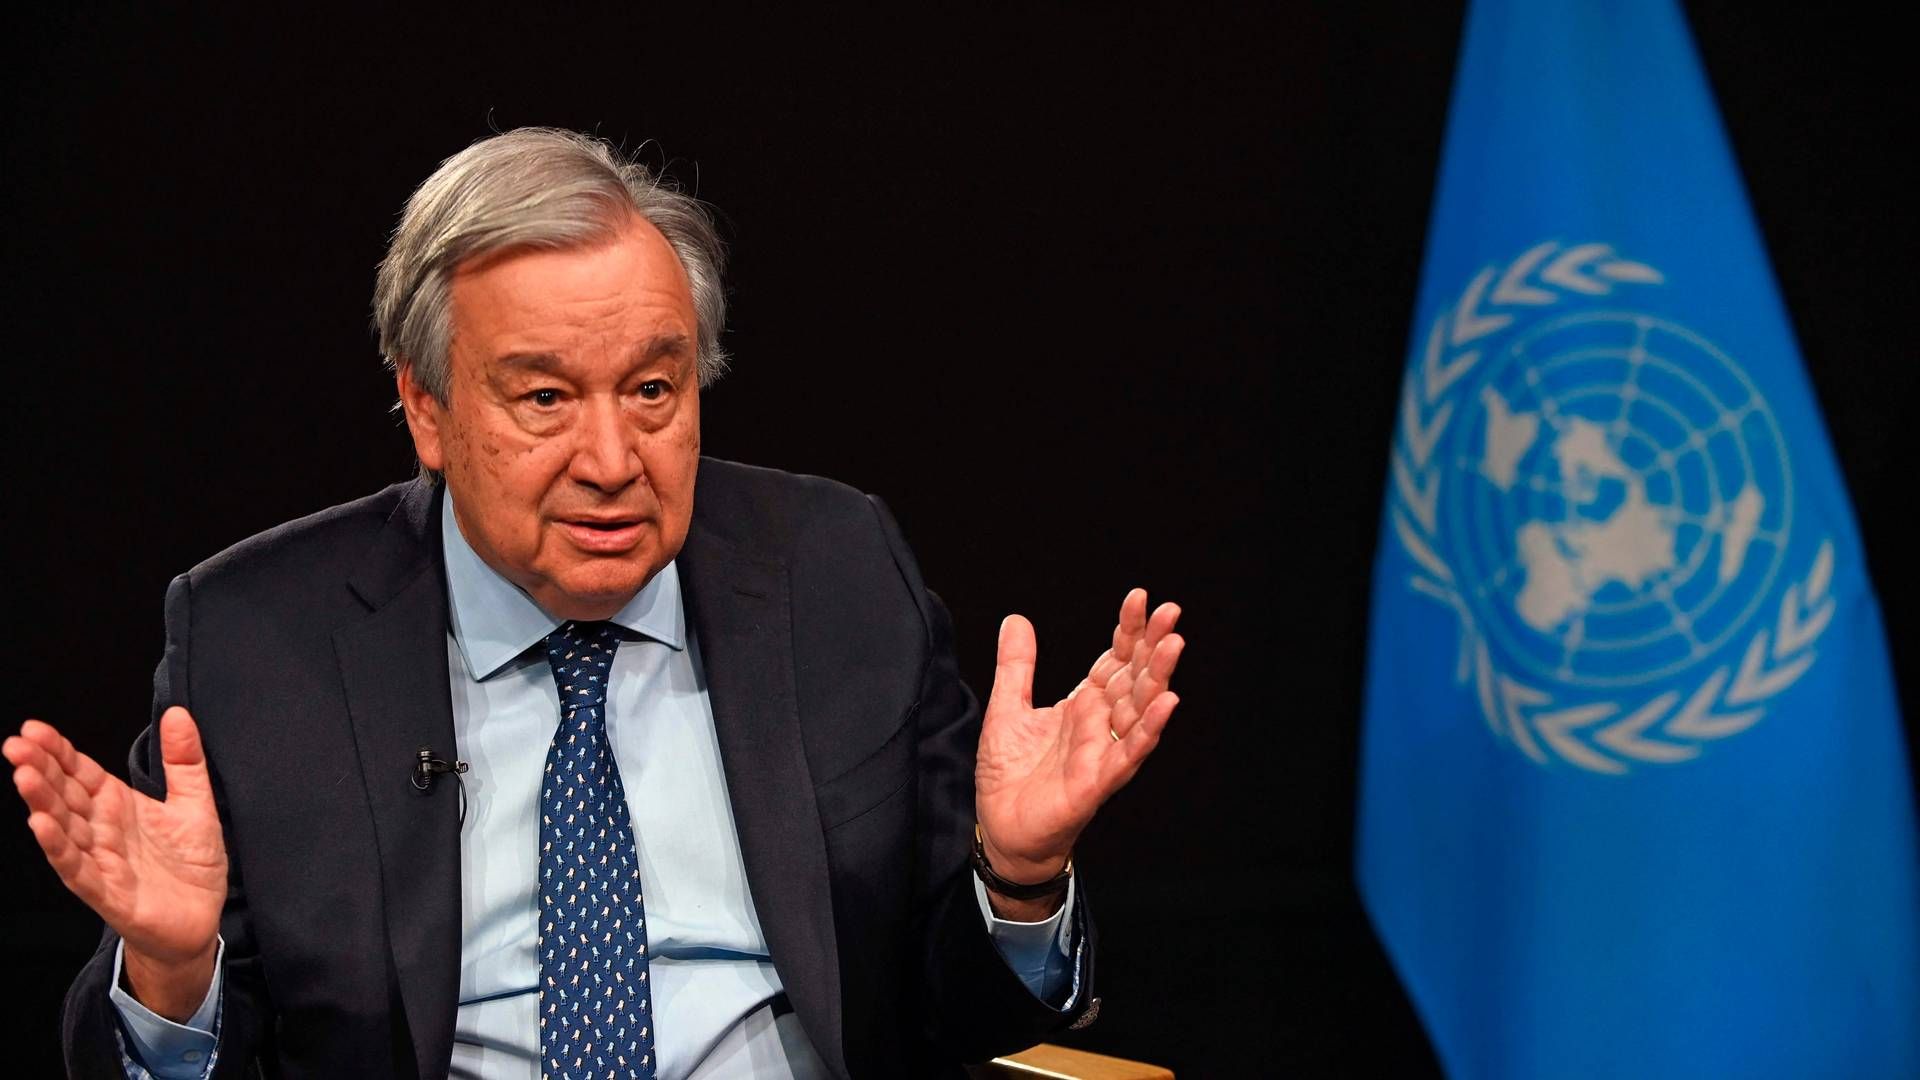 ”Jeg synes, det ville være en skam, hvis vi fortsætter med en vag og ikke-forpligtende udfasning, hvis betydning ikke er tydelig for enhver," siger FN’s generalsekretær, António Guterres. | Foto: Andrea Renault/AFP/Ritzau Scanpix